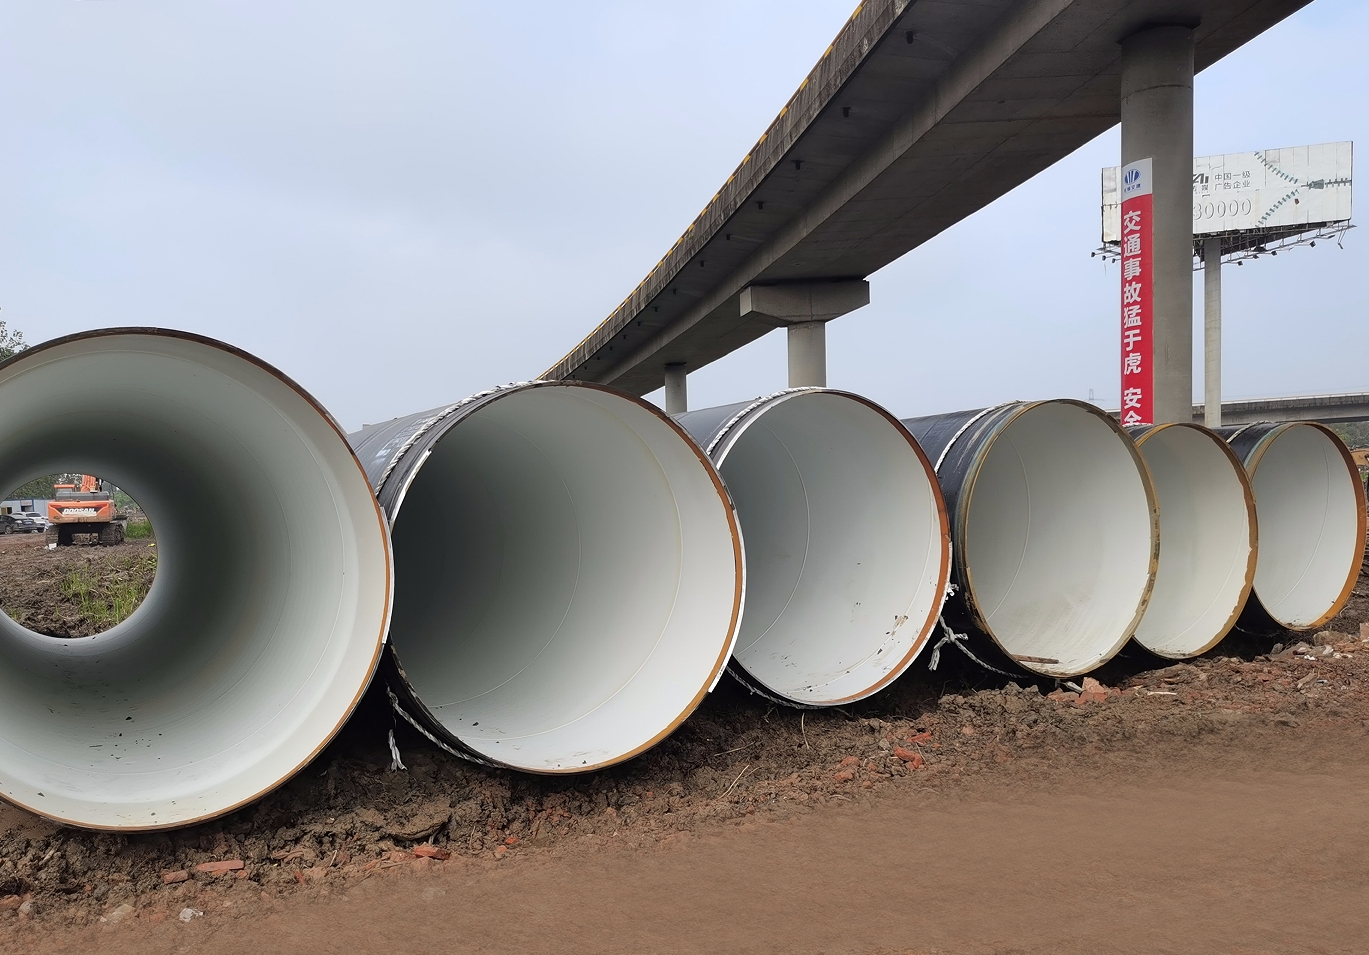 Le double tube en acier DN2200 du projet de dérivation et de relocalisation de l'eau du fleuve Yangtsé a traversé avec succès l'autoroute le long du fleuve